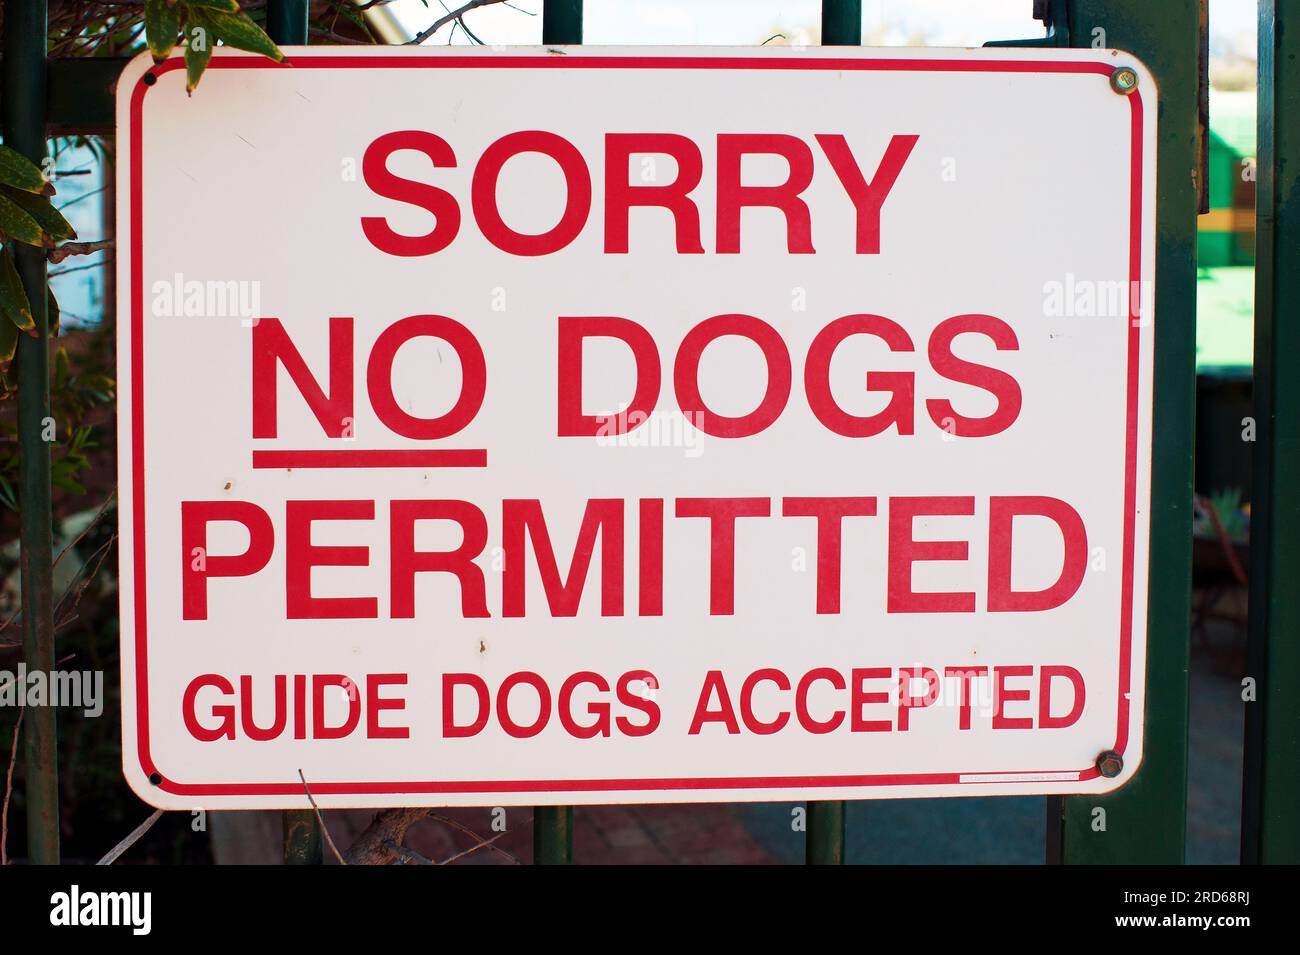 Désolé aucun chien autorisé signe avec une erreur grammaticale dans le texte ; « accepté » doit être « excepté » Banque D'Images